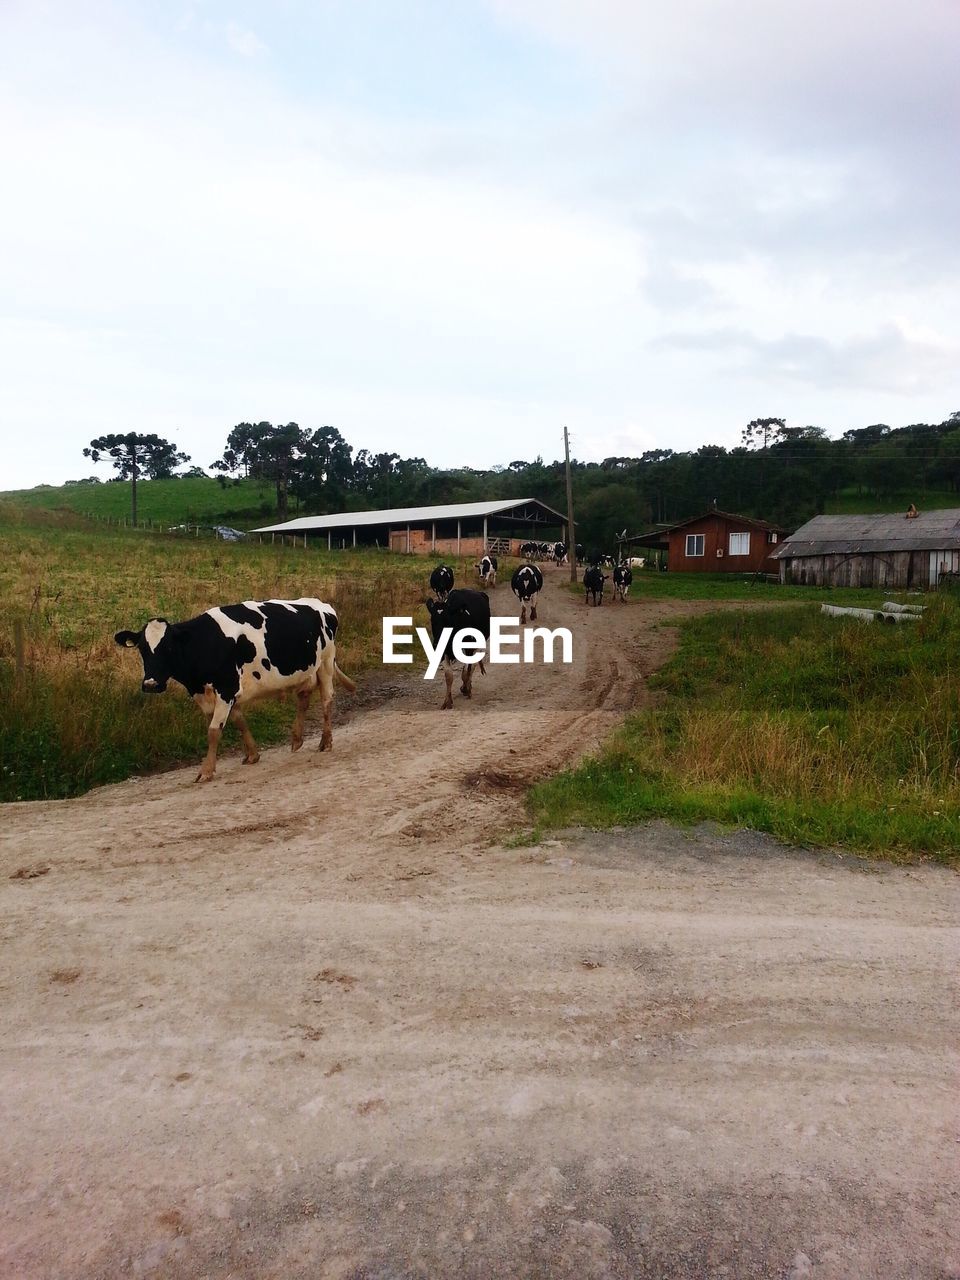 Cows walking on dirt road against sky